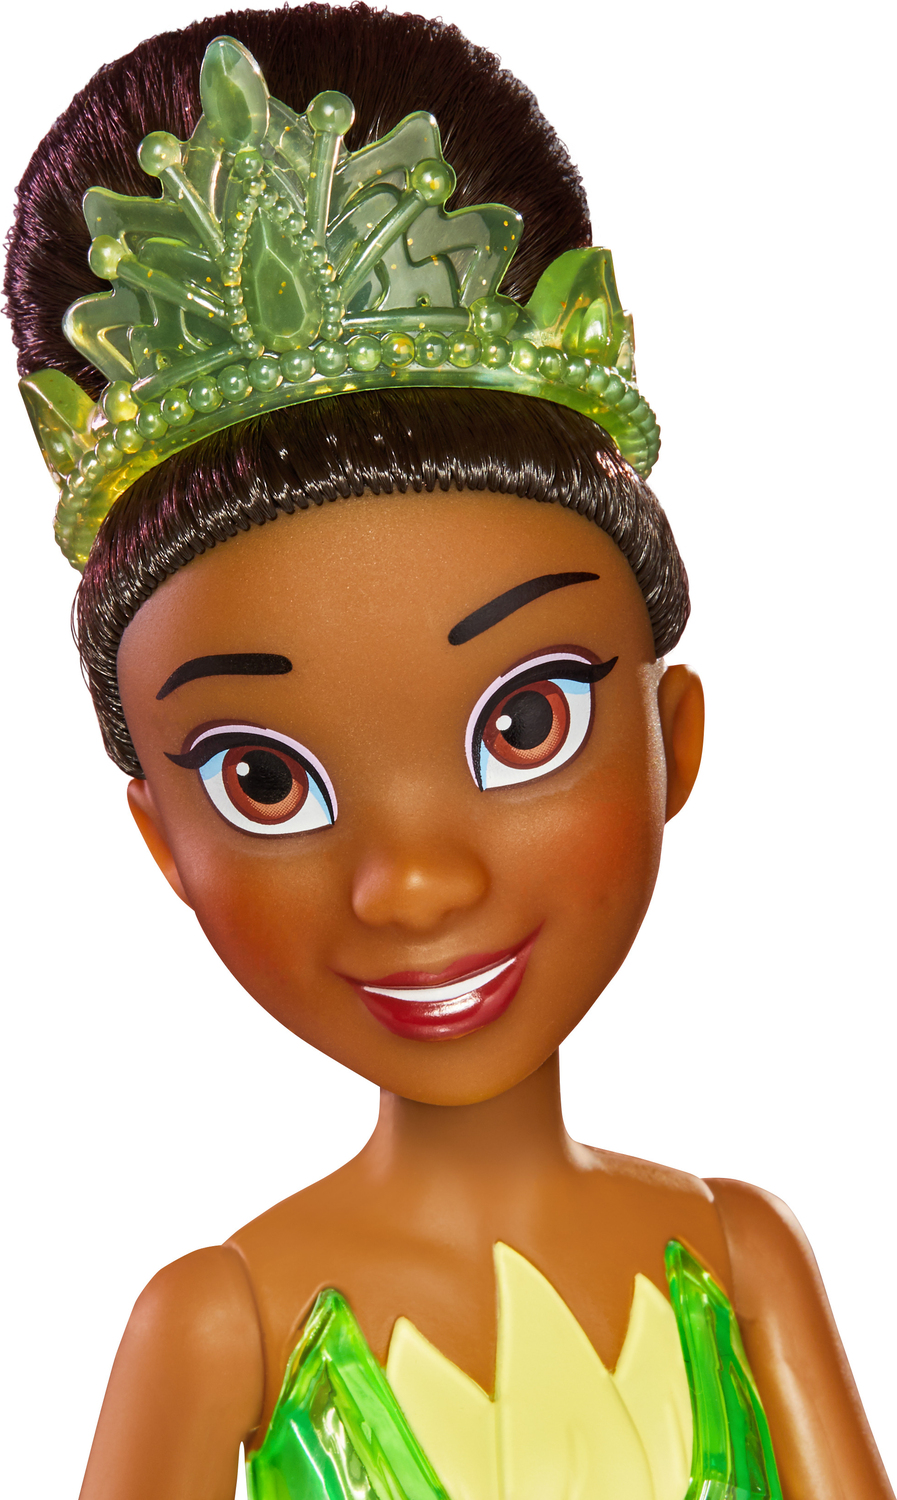 Disney Princess Dolls Tiana, Princess Tiana Cartoon